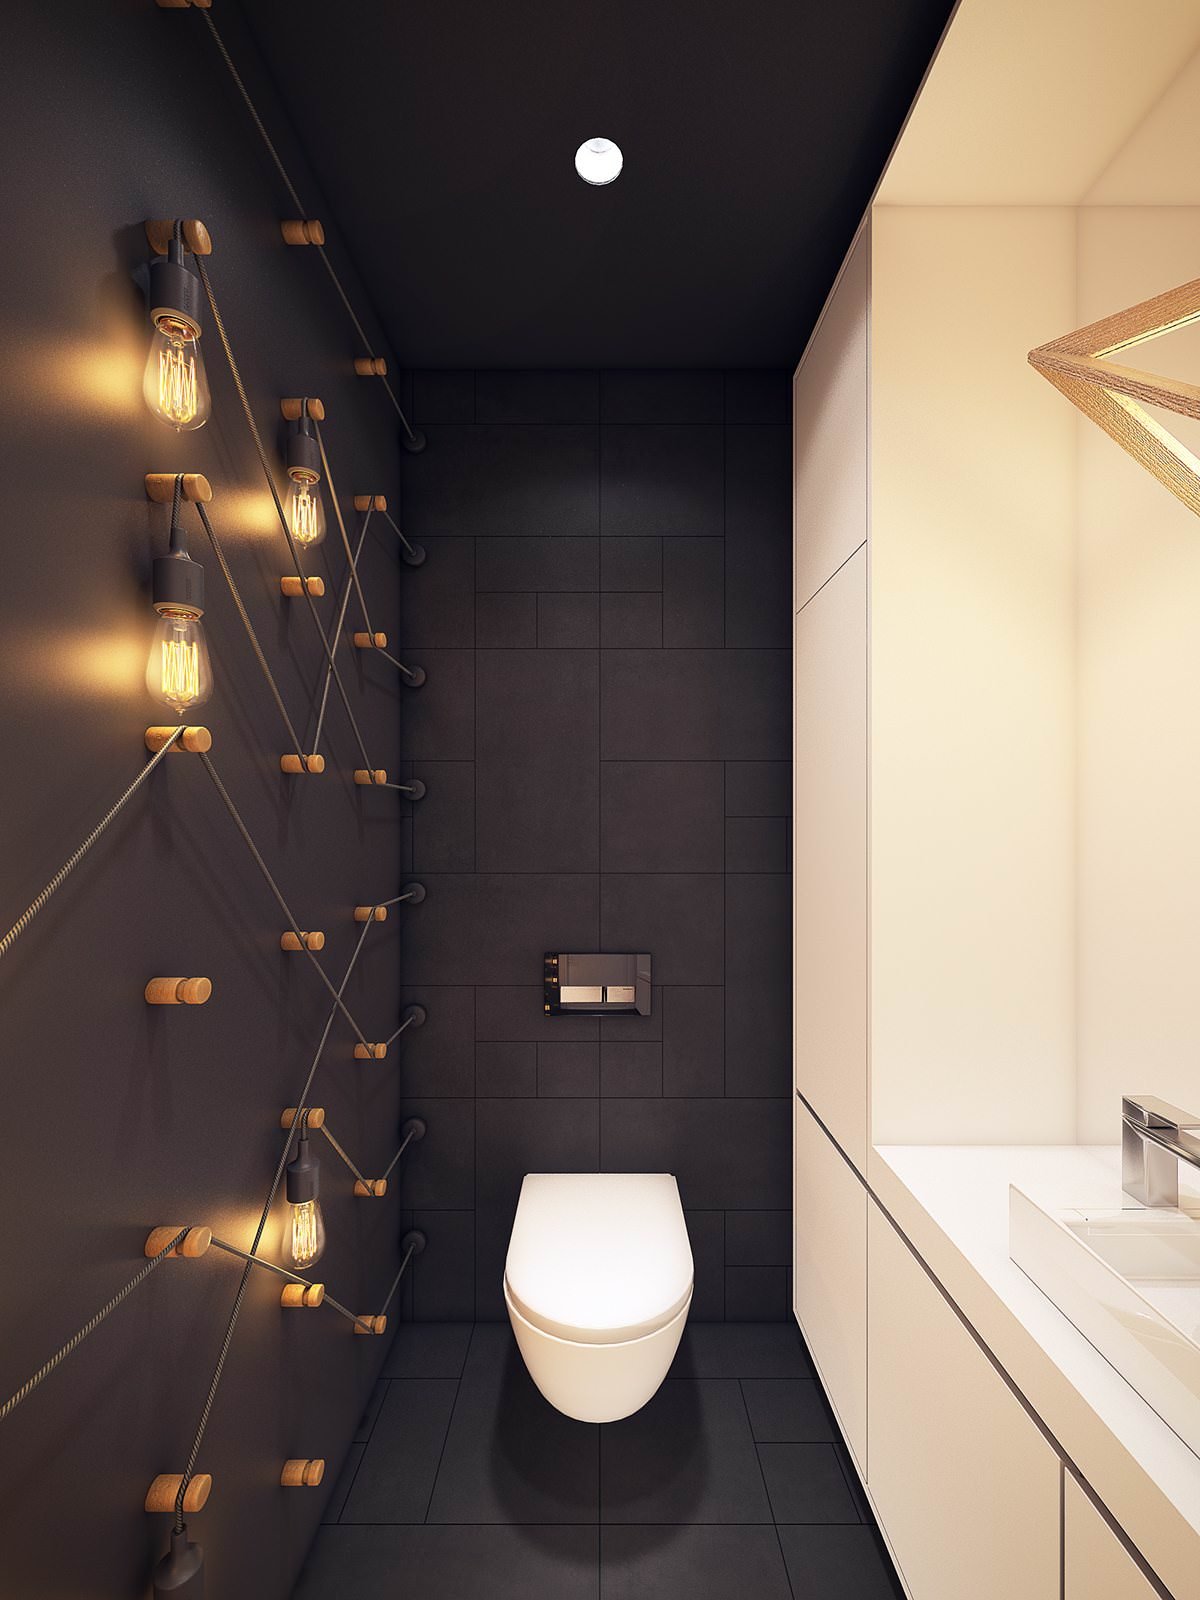 Длинный узкий туалет дизайн